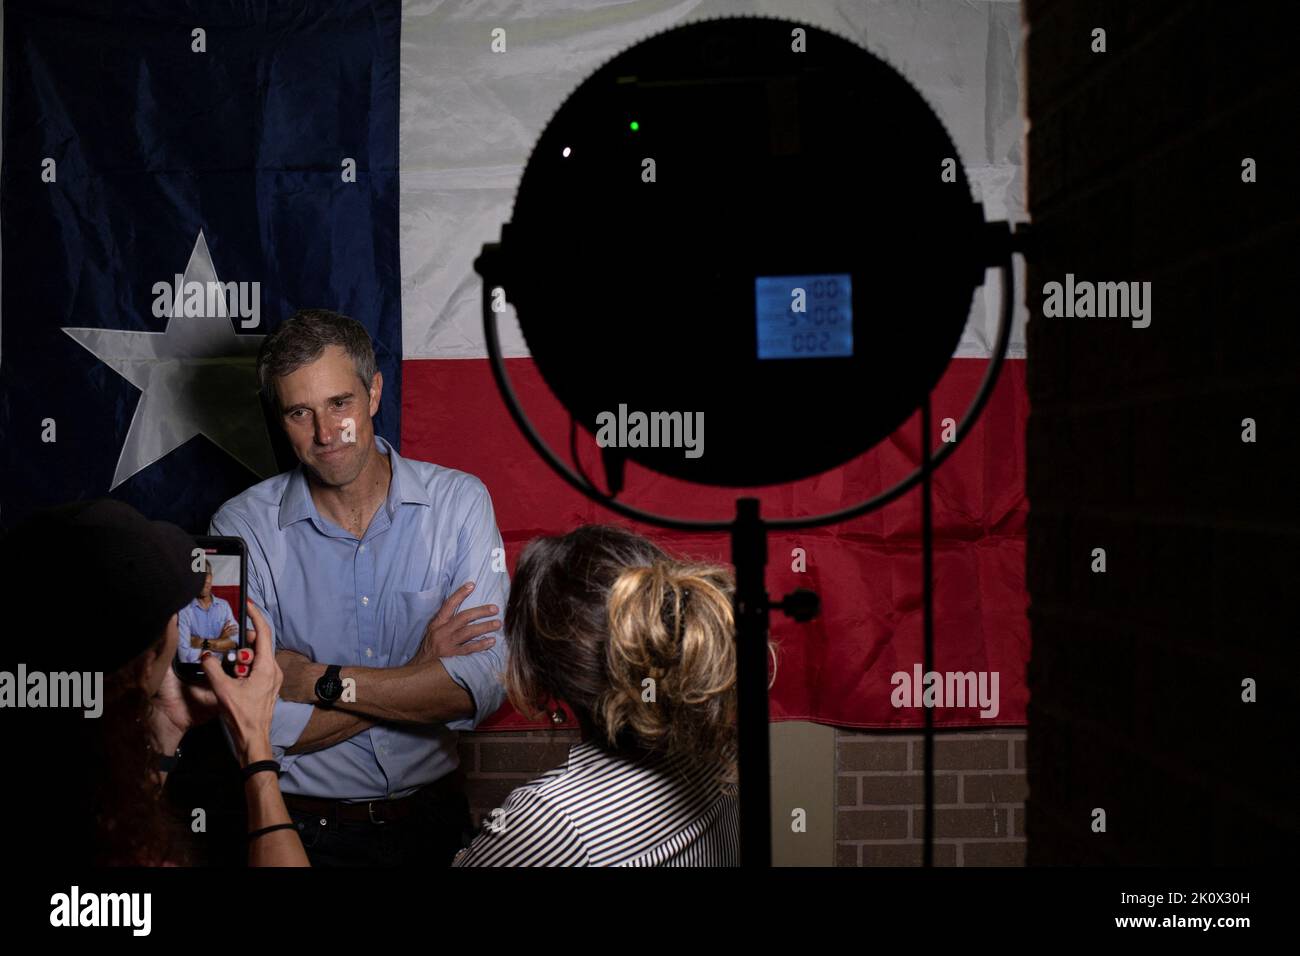 Le candidat au poste de gouverneur démocrate du Texas et l'ancien congressiste américain Beto O'Rourke se tient devant le drapeau de l'État du Texas tout en posant pour des photographies lors d'un événement de campagne à Houston, Texas, 13 septembre 2022 des États-Unis. REUTERS/adrees Latif Banque D'Images